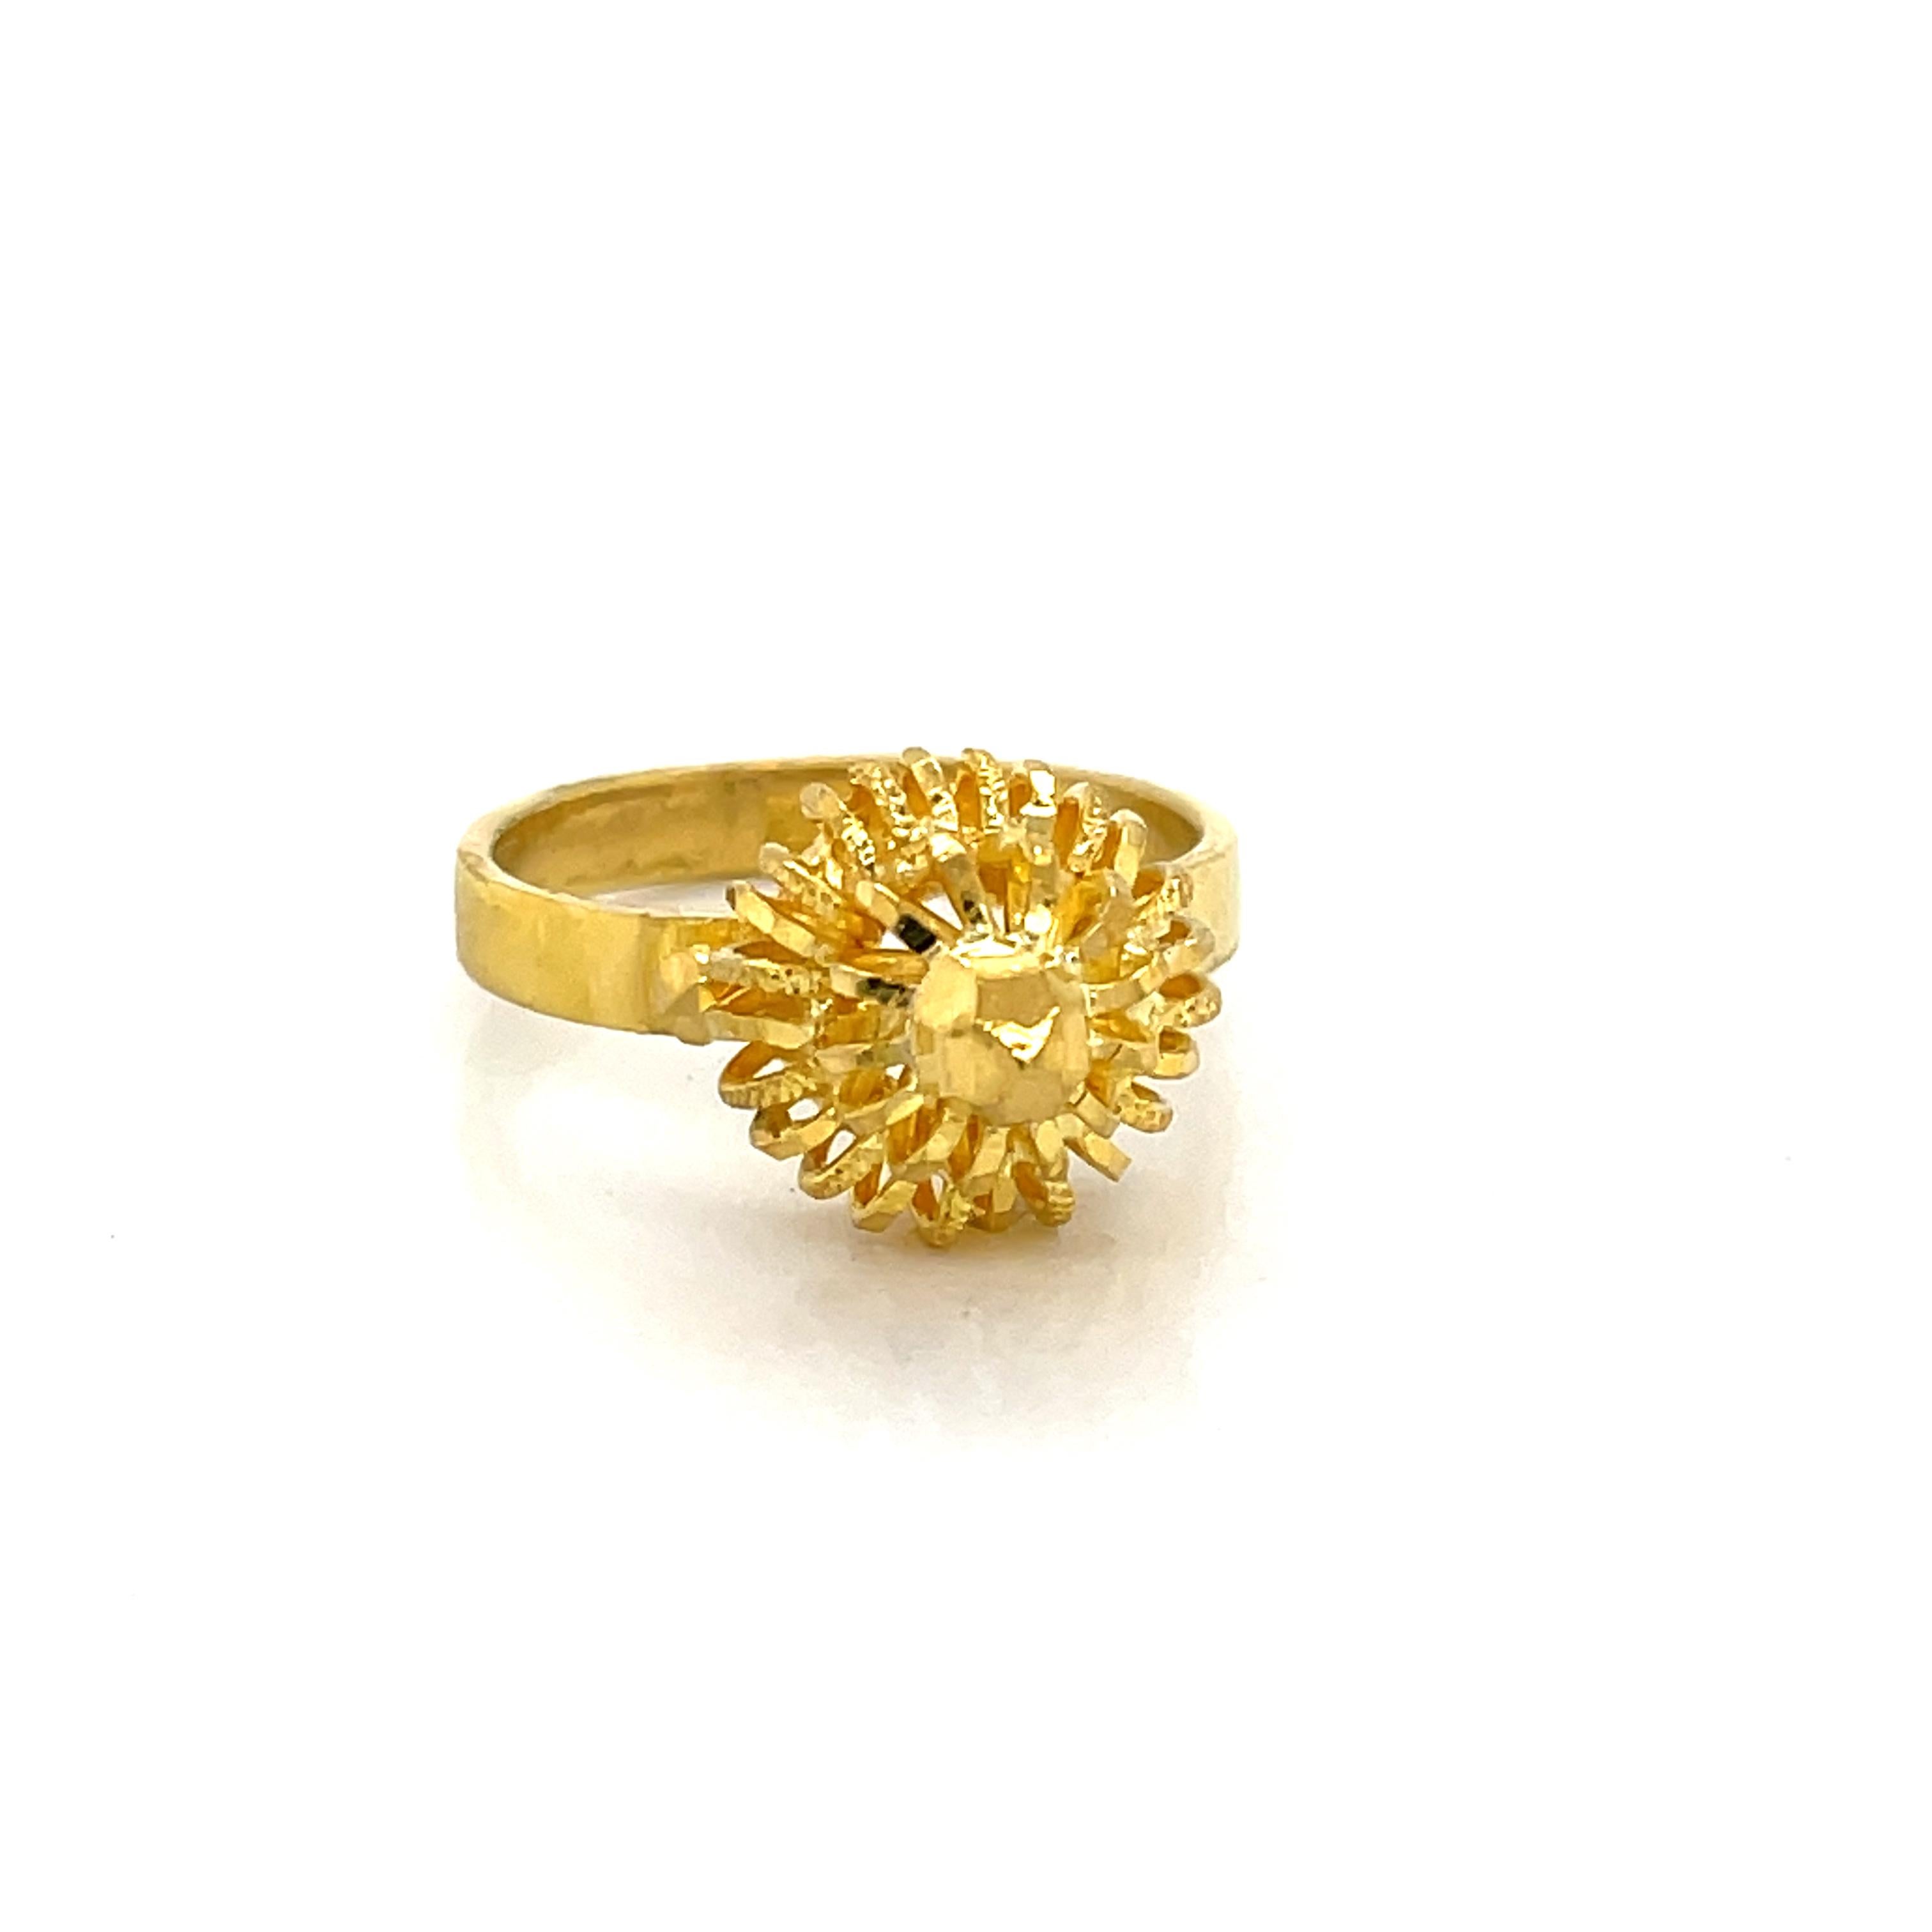 Women's Twenty Two Karat 22K Yellow Gold Artisan Sunburst Ring